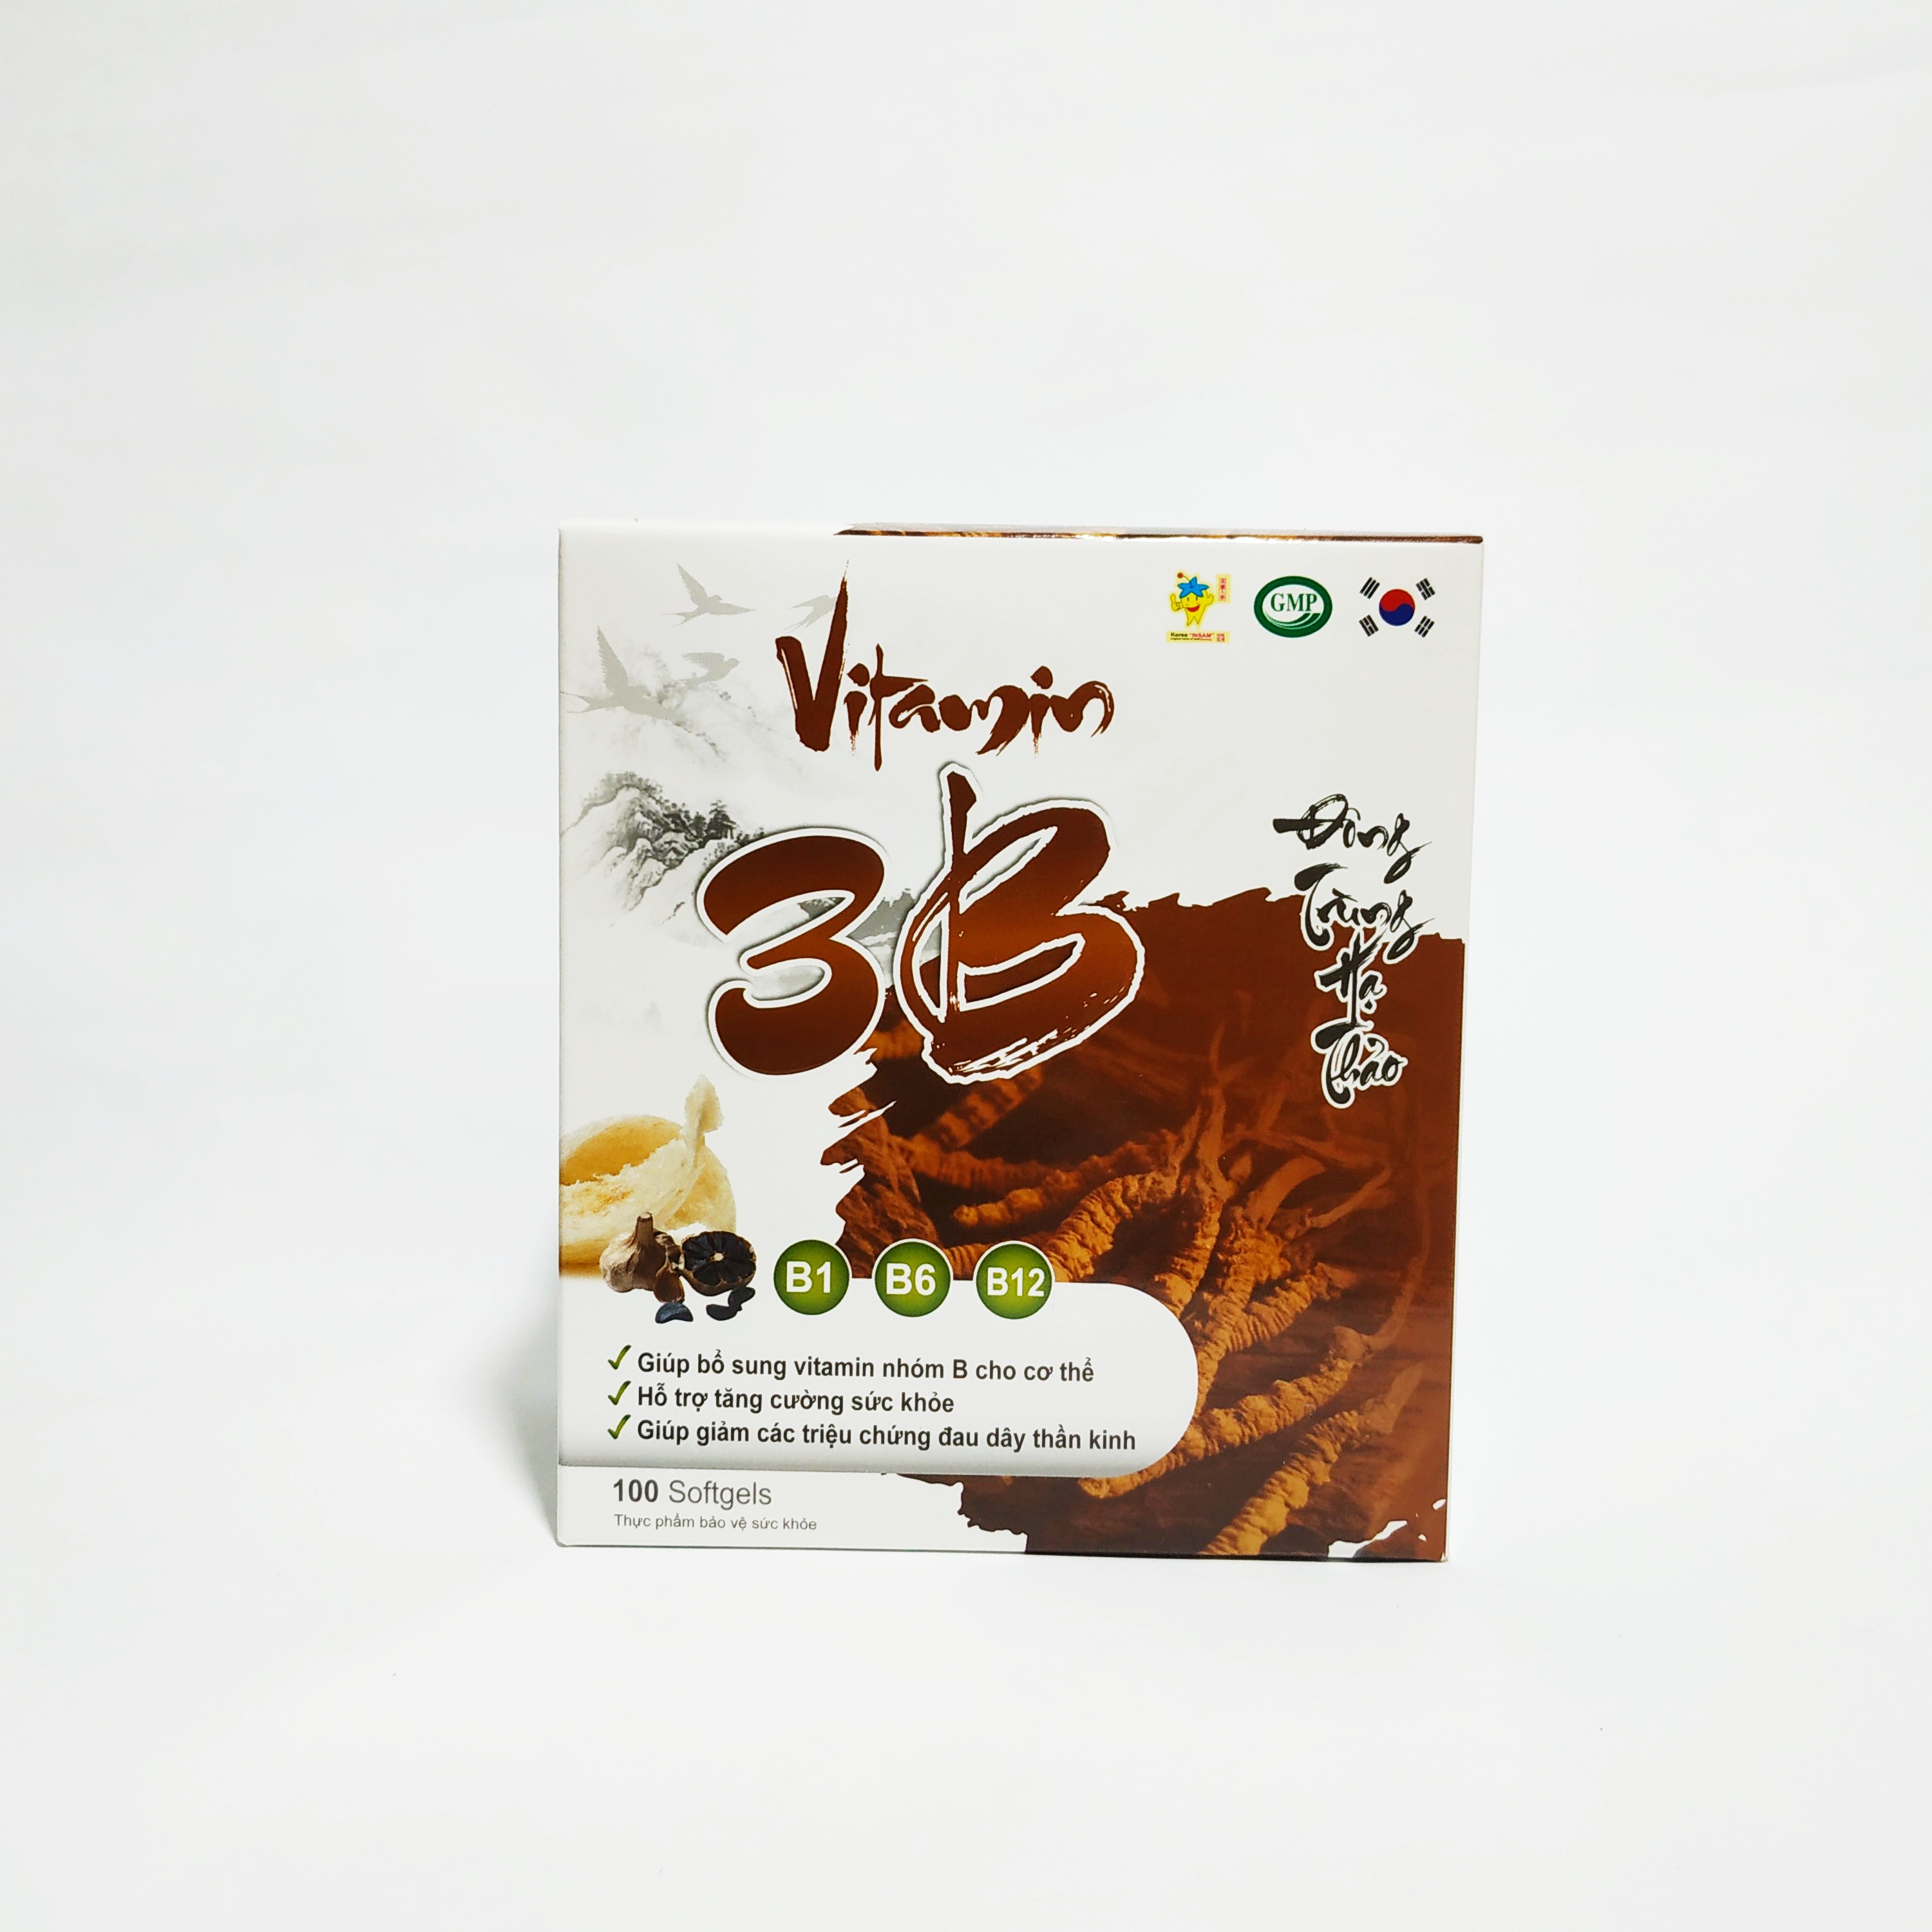 Vitamin 3B Đông Trùng Hạ Thảo – Bổ Sung Các Vitamin Nhóm B – Giúp Ăn Ngon Ngủ Tốt – Giảm Đau Dây Thận Kinh – Hộp 100 Viên